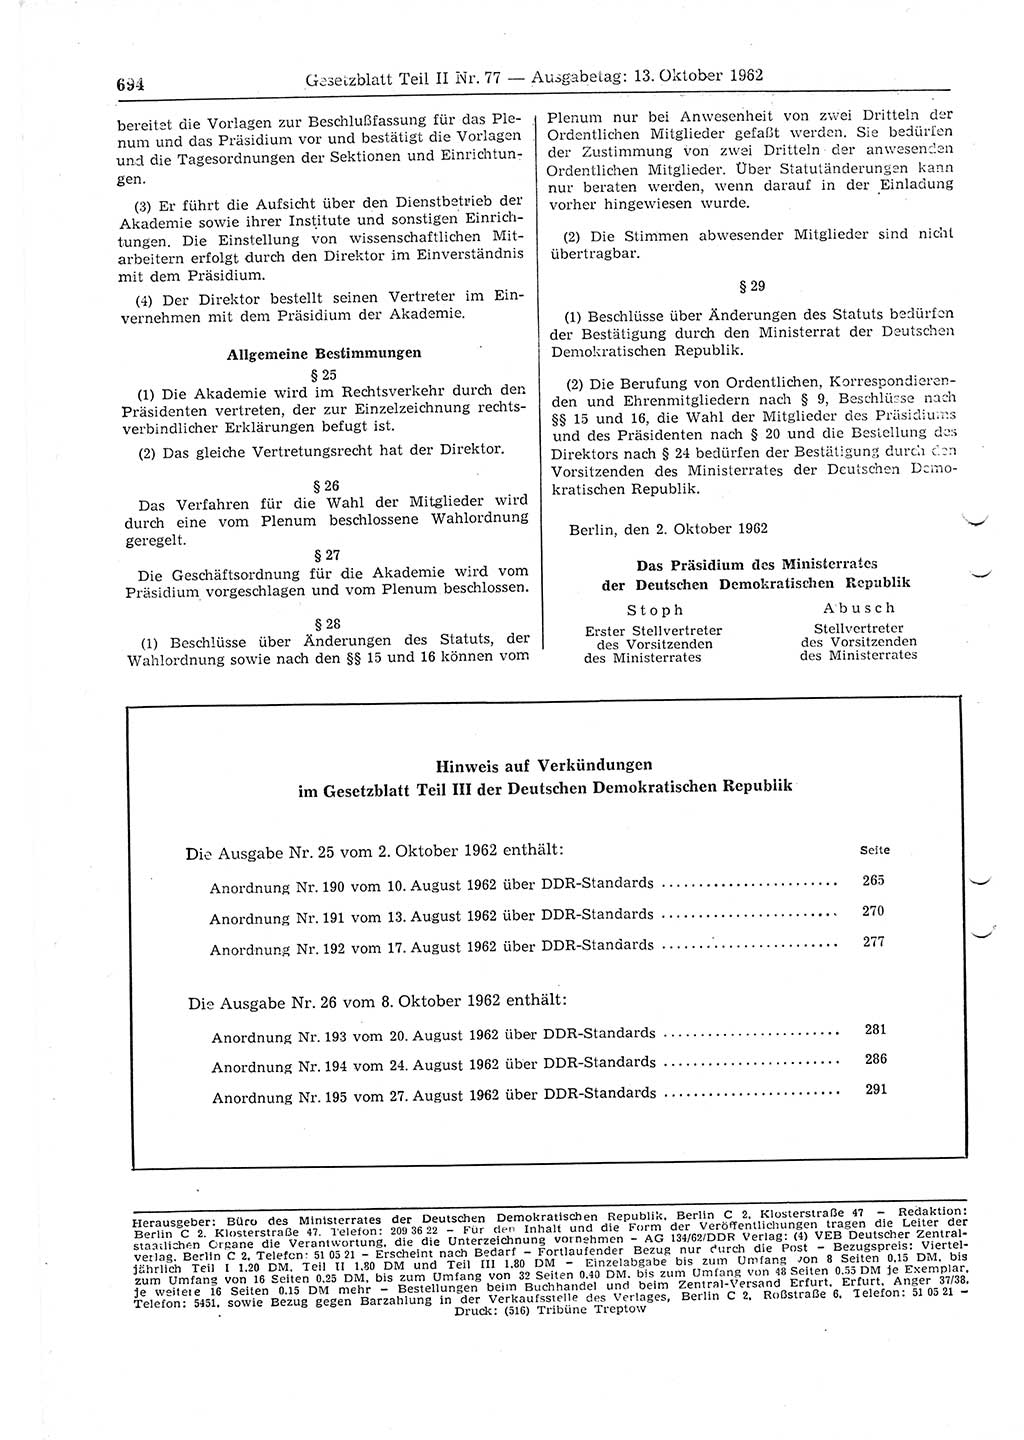 Gesetzblatt (GBl.) der Deutschen Demokratischen Republik (DDR) Teil ⅠⅠ 1962, Seite 694 (GBl. DDR ⅠⅠ 1962, S. 694)